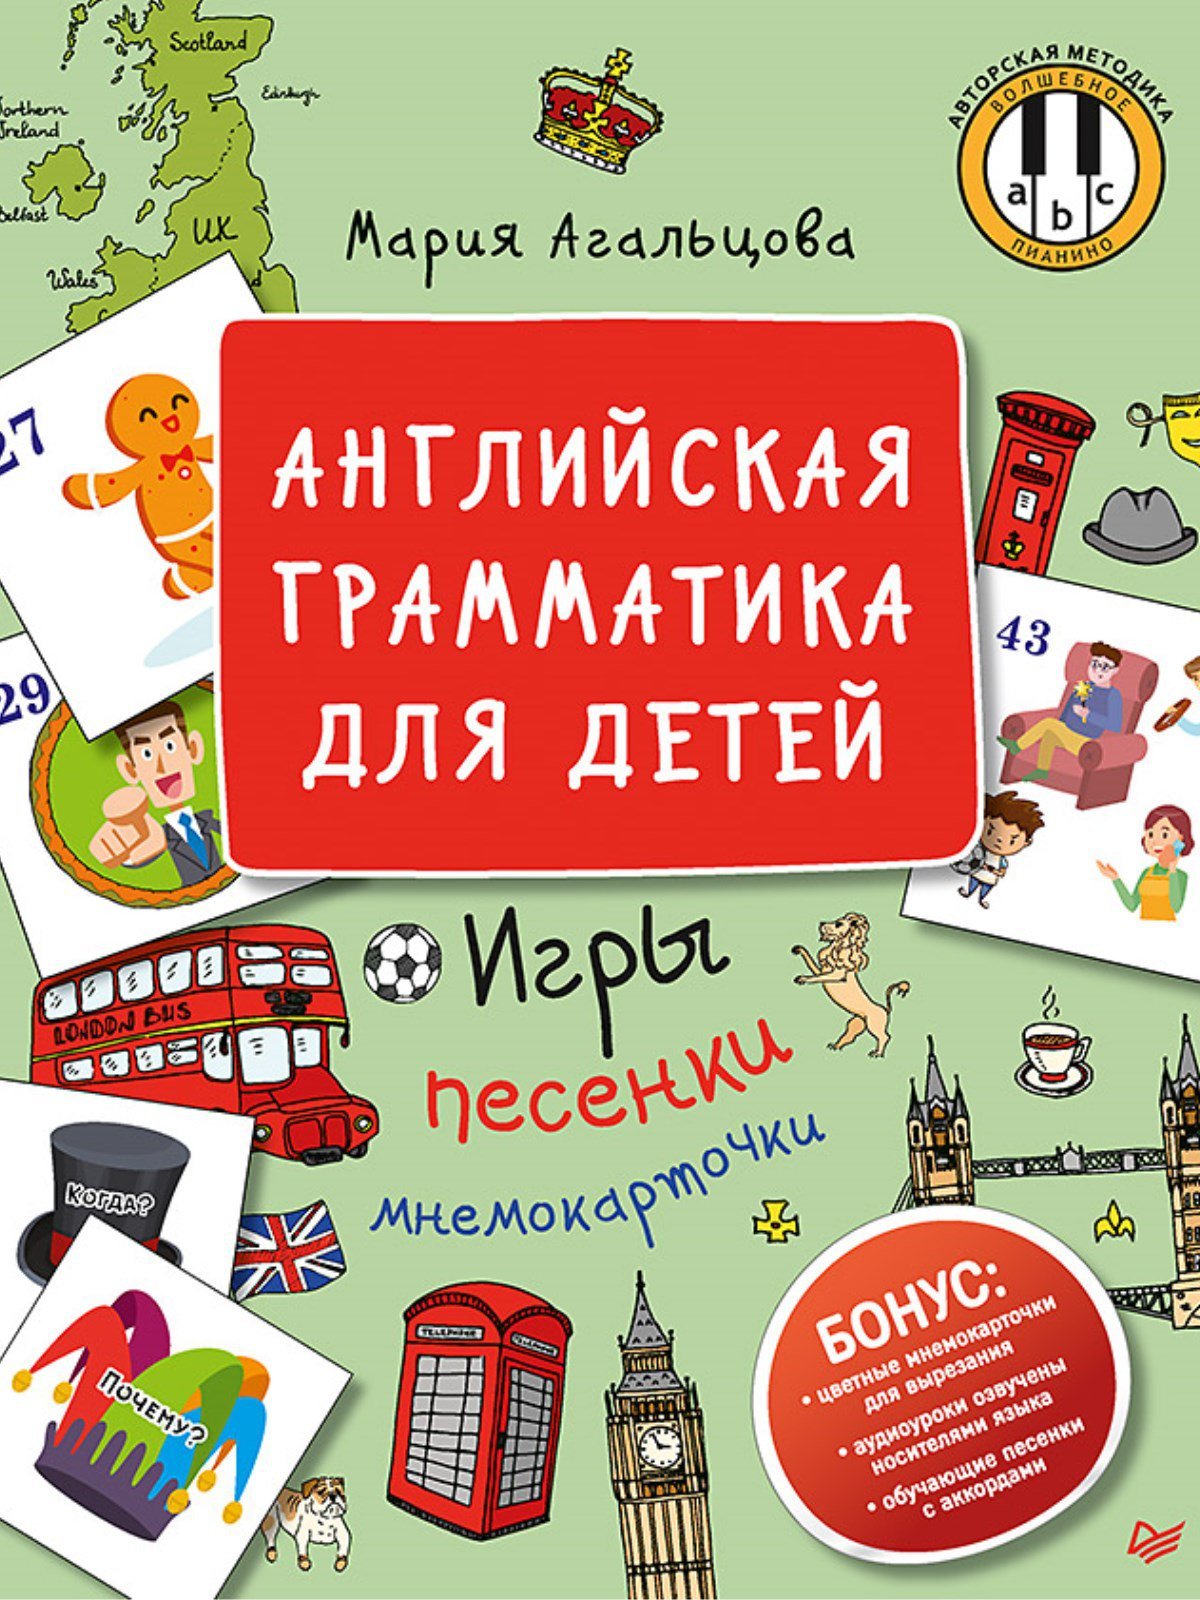 Агальцова Мария - Английская грамматика для детей. Игры, Песенки и Мнемокарточки